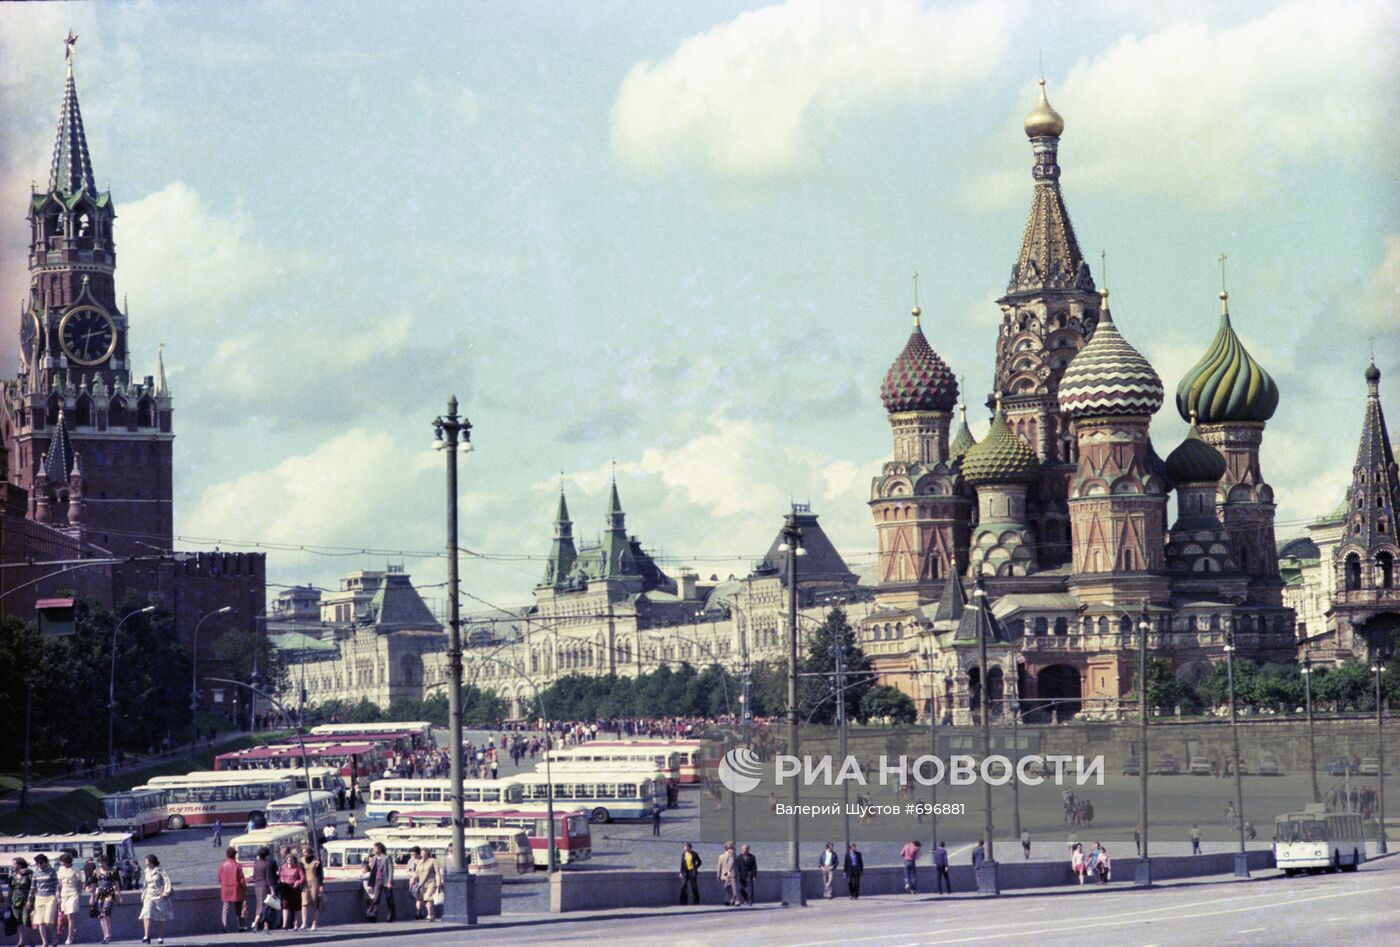 Спасская башня Московского Кремля и храм Василия Блаженного